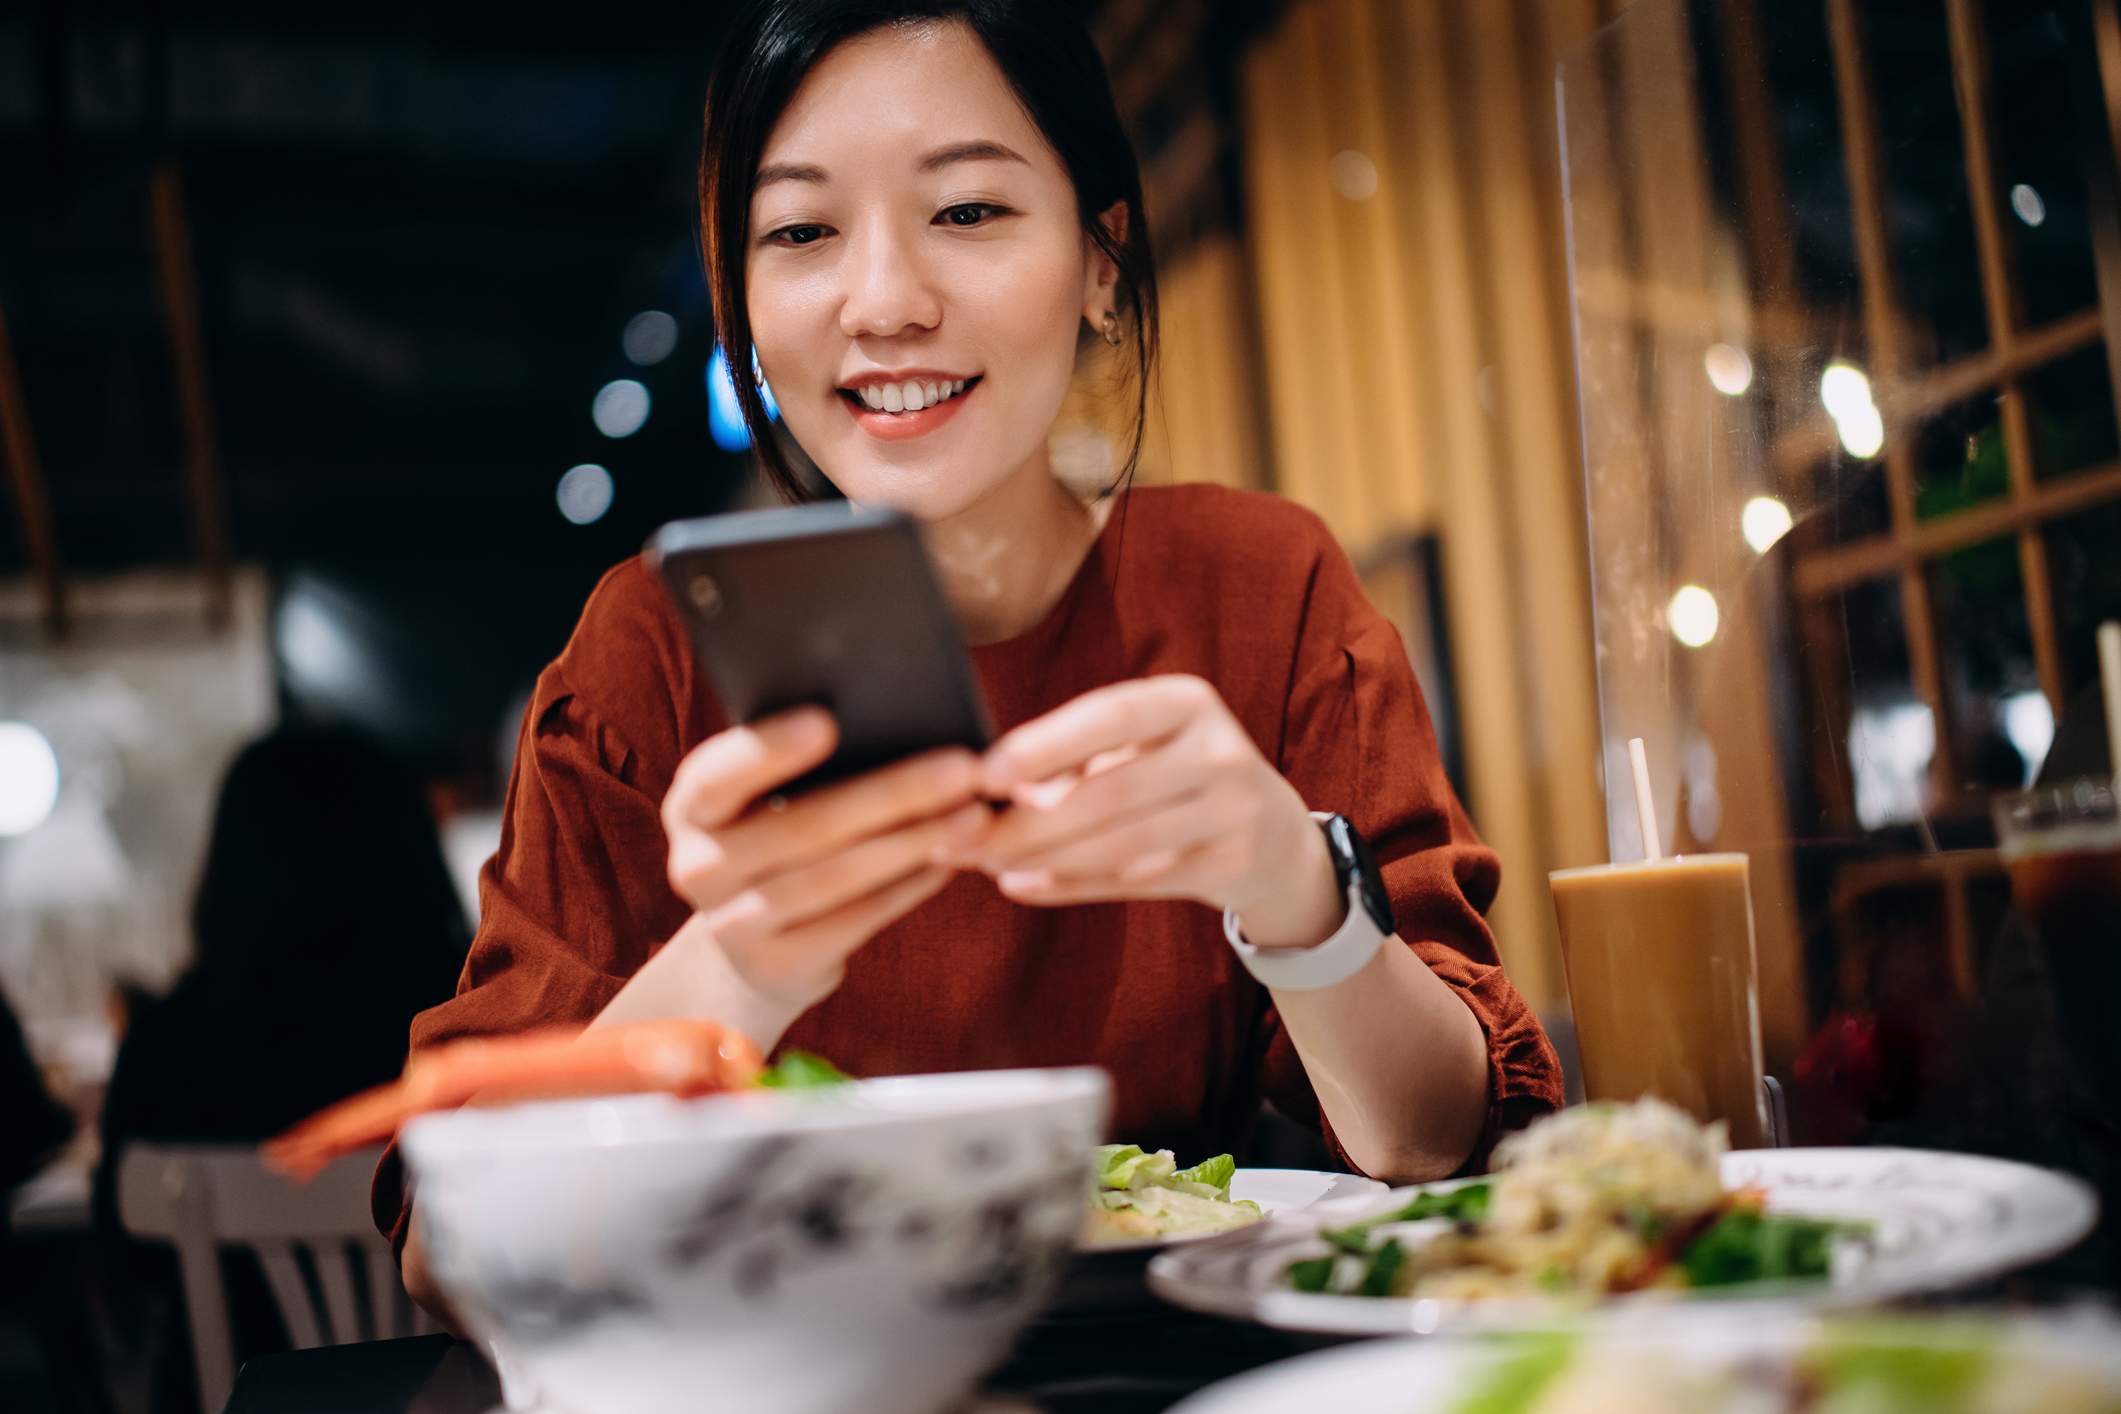 l'image montre une personne dans un restaurant utilisant son téléphone. Elle porte une chemise rouge et une smartwatch et elle sourit en regardant son téléphone.